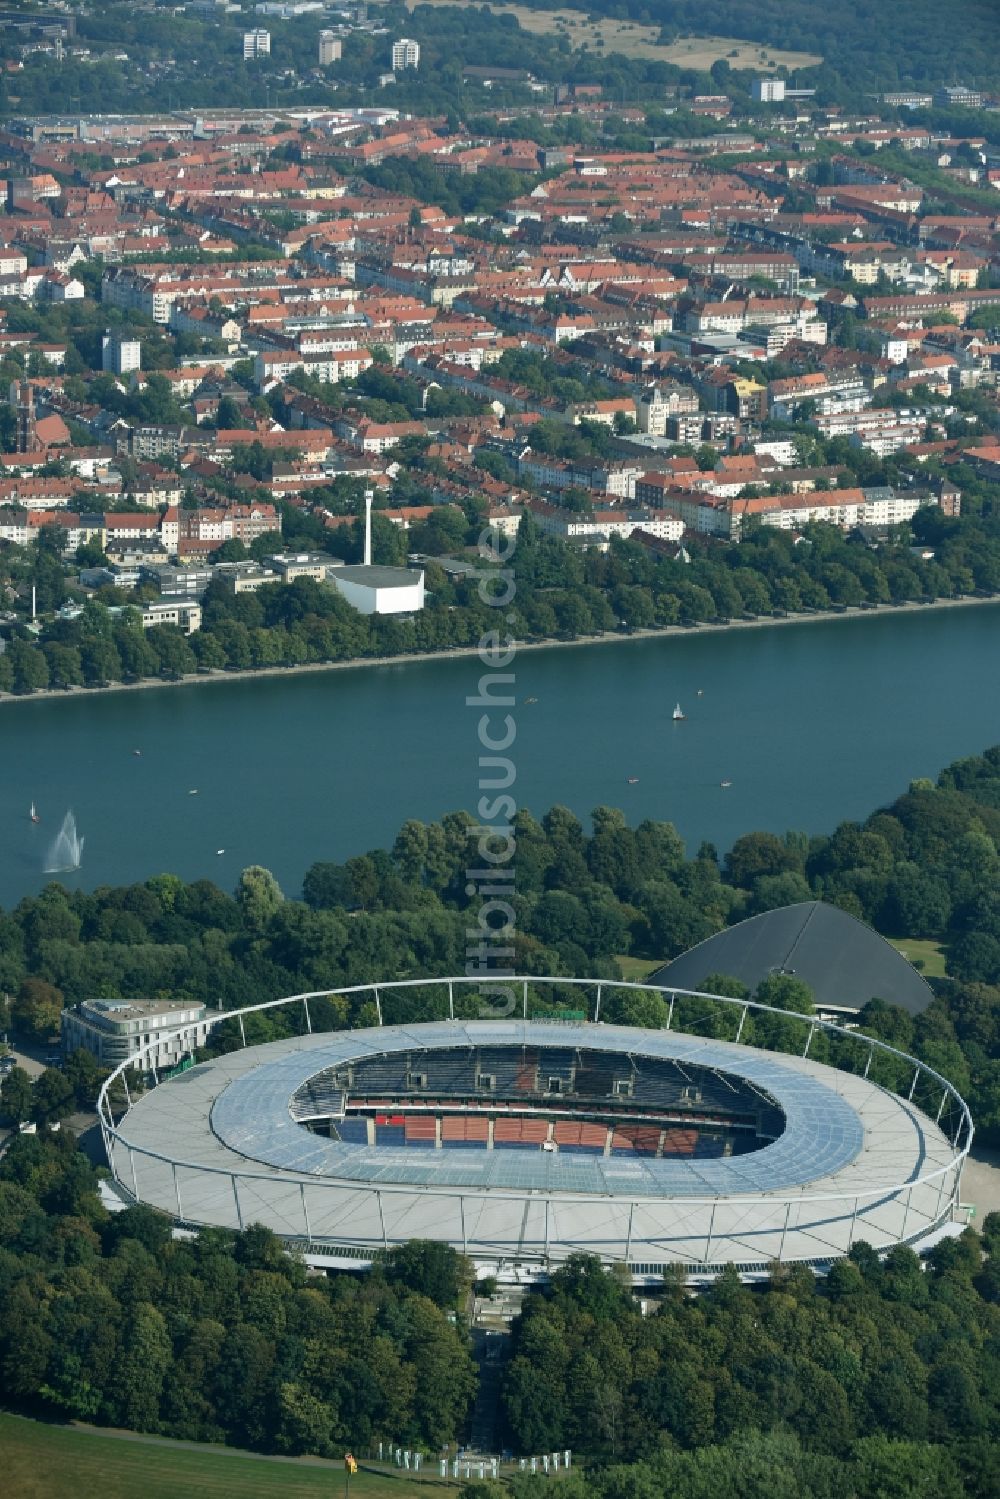 Hannover von oben - Stadion der HDI Arena im Stadtteil Calenberger Neustadt von Hannover in Niedersachsen